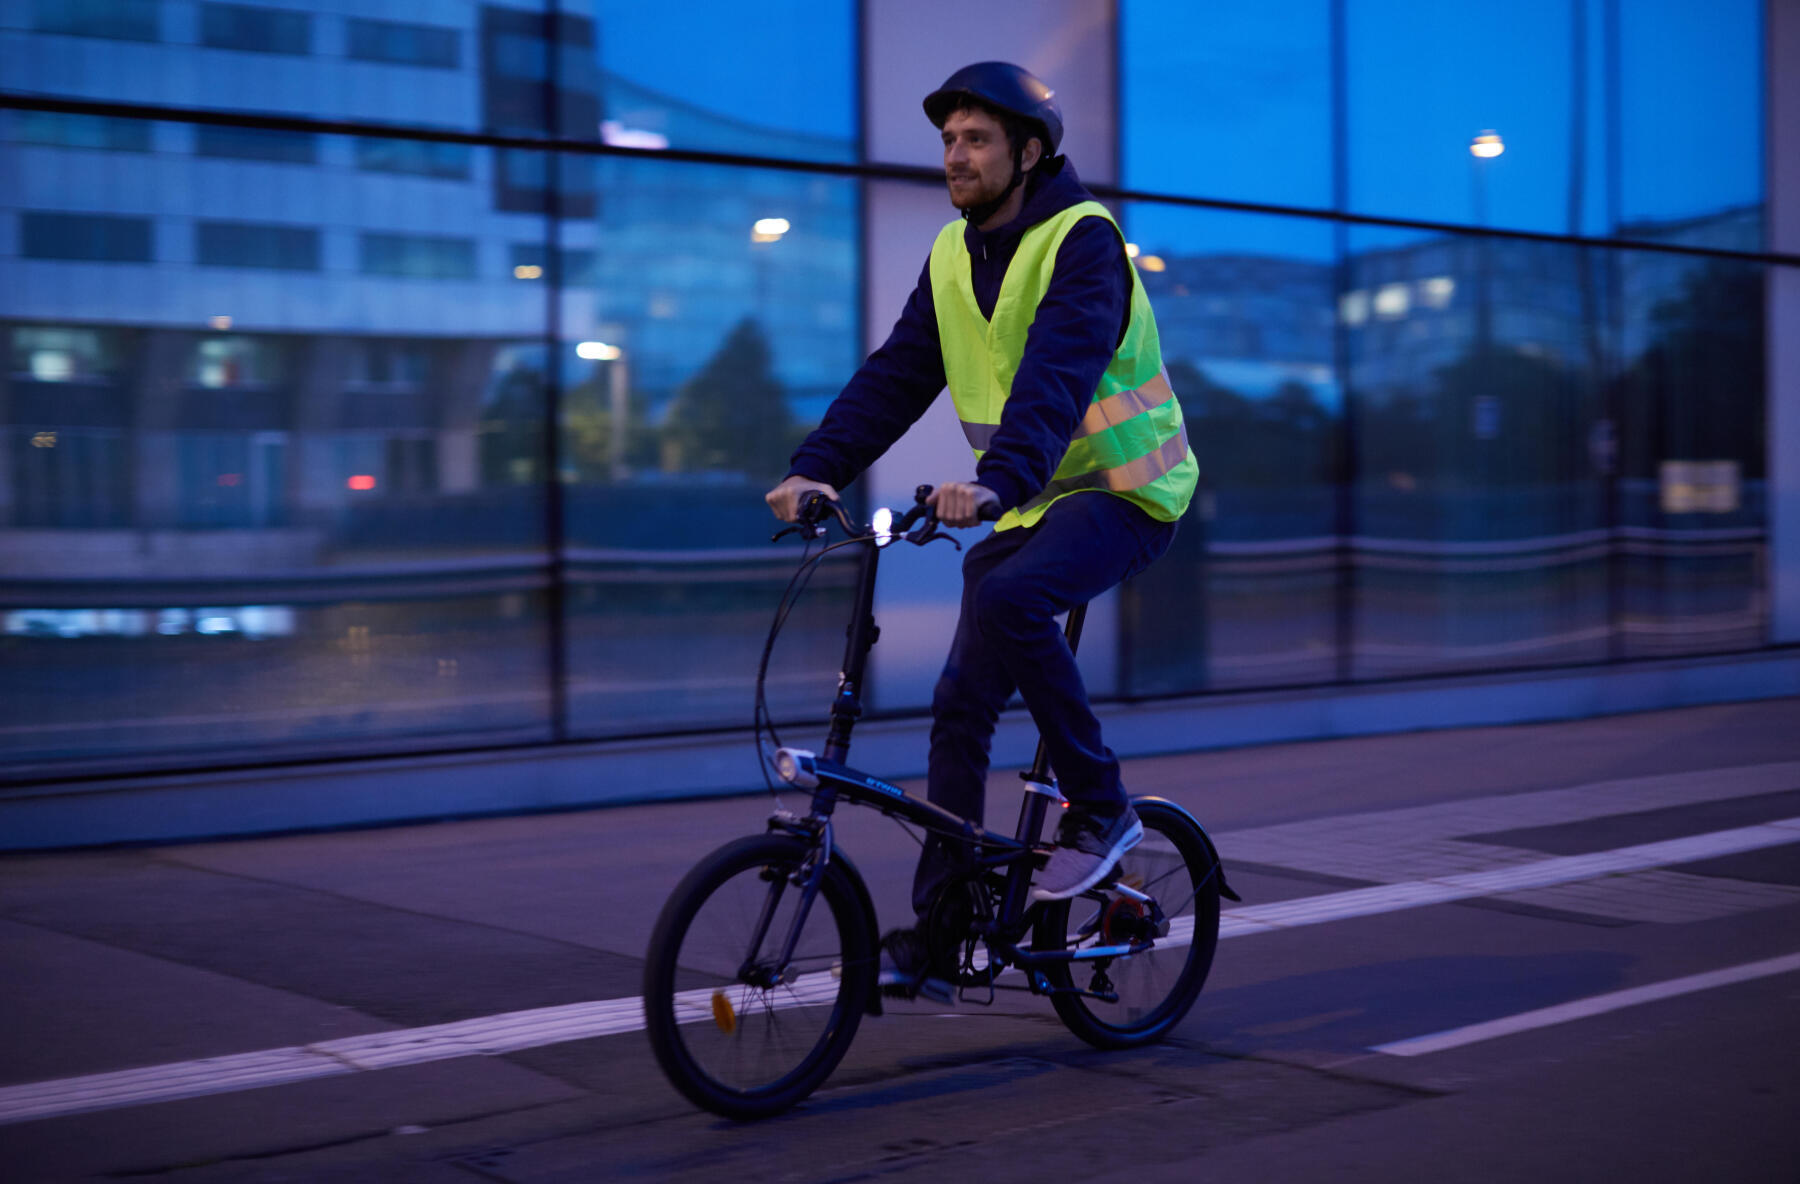 踩單車時需配戴合適裝備及配備單車燈在馬路上騎行